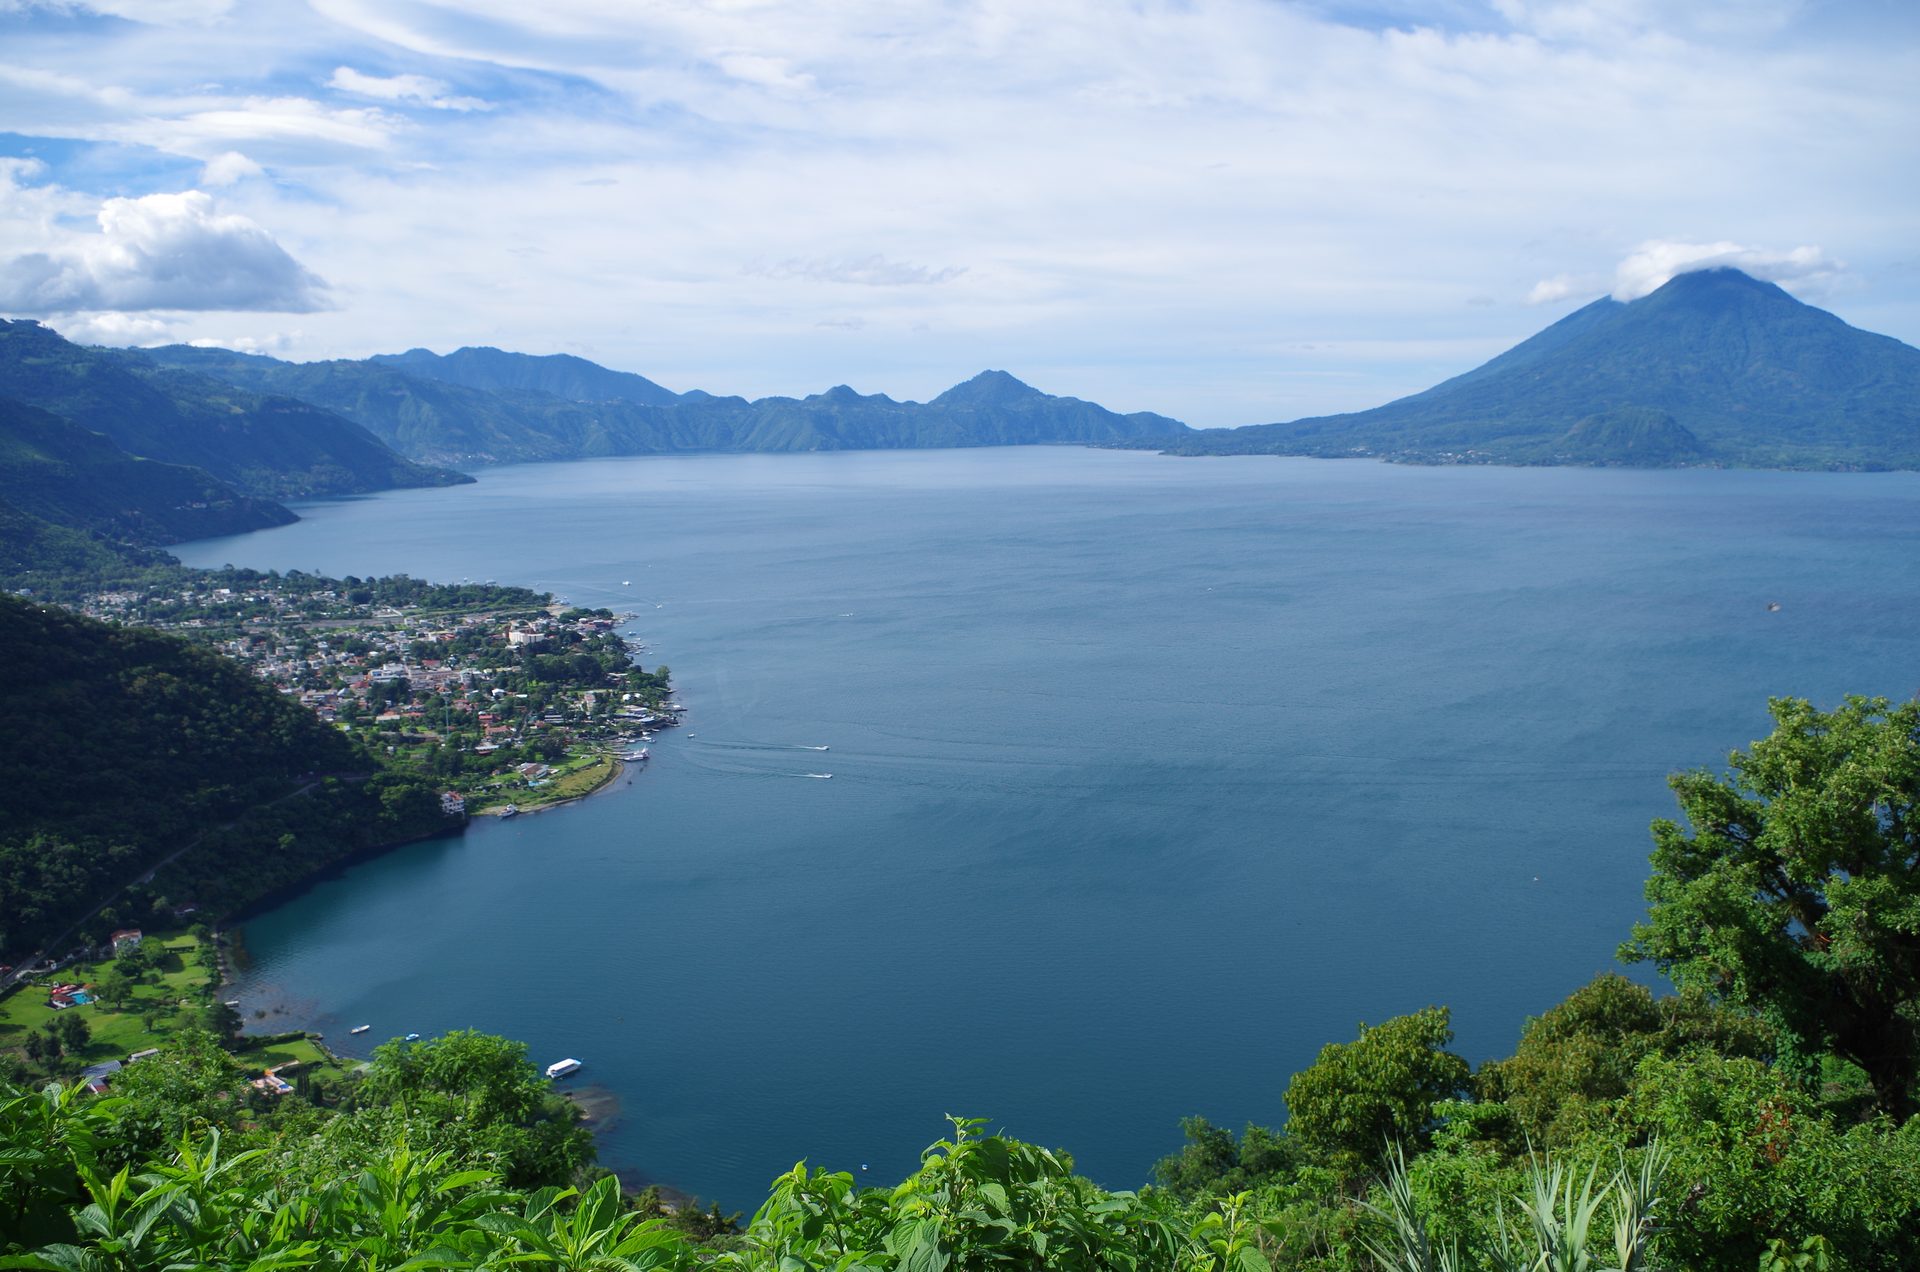 Belgian man found dead in lake in Guatemala